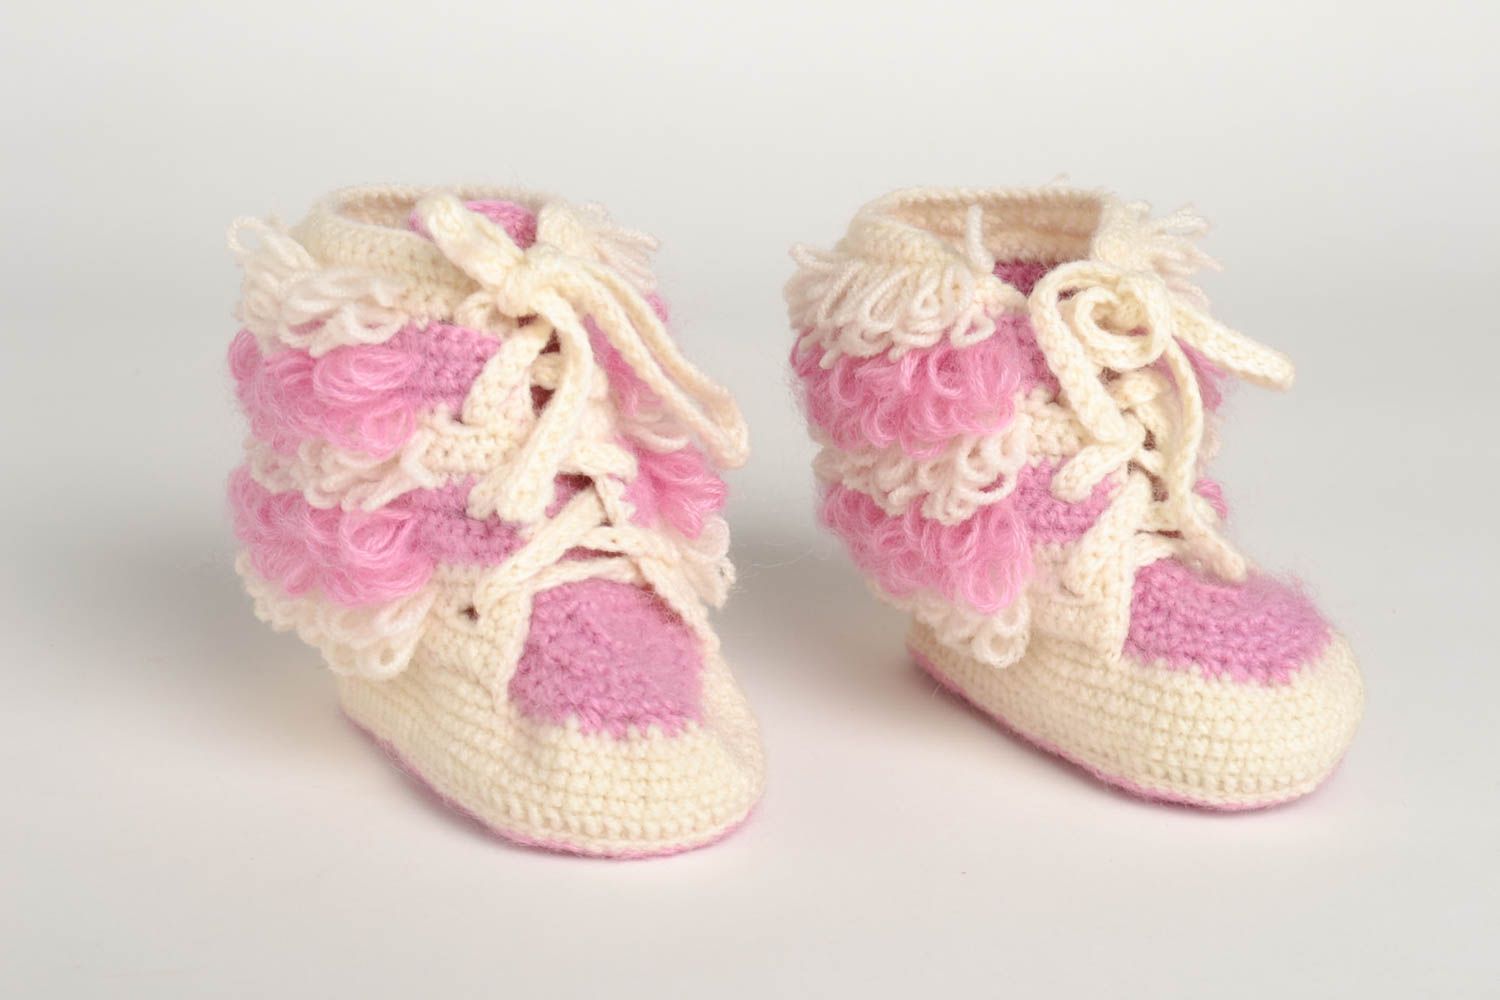 Chaussons bébé fait main tricotés au crochet blanc-rose Chaussures bébé photo 5